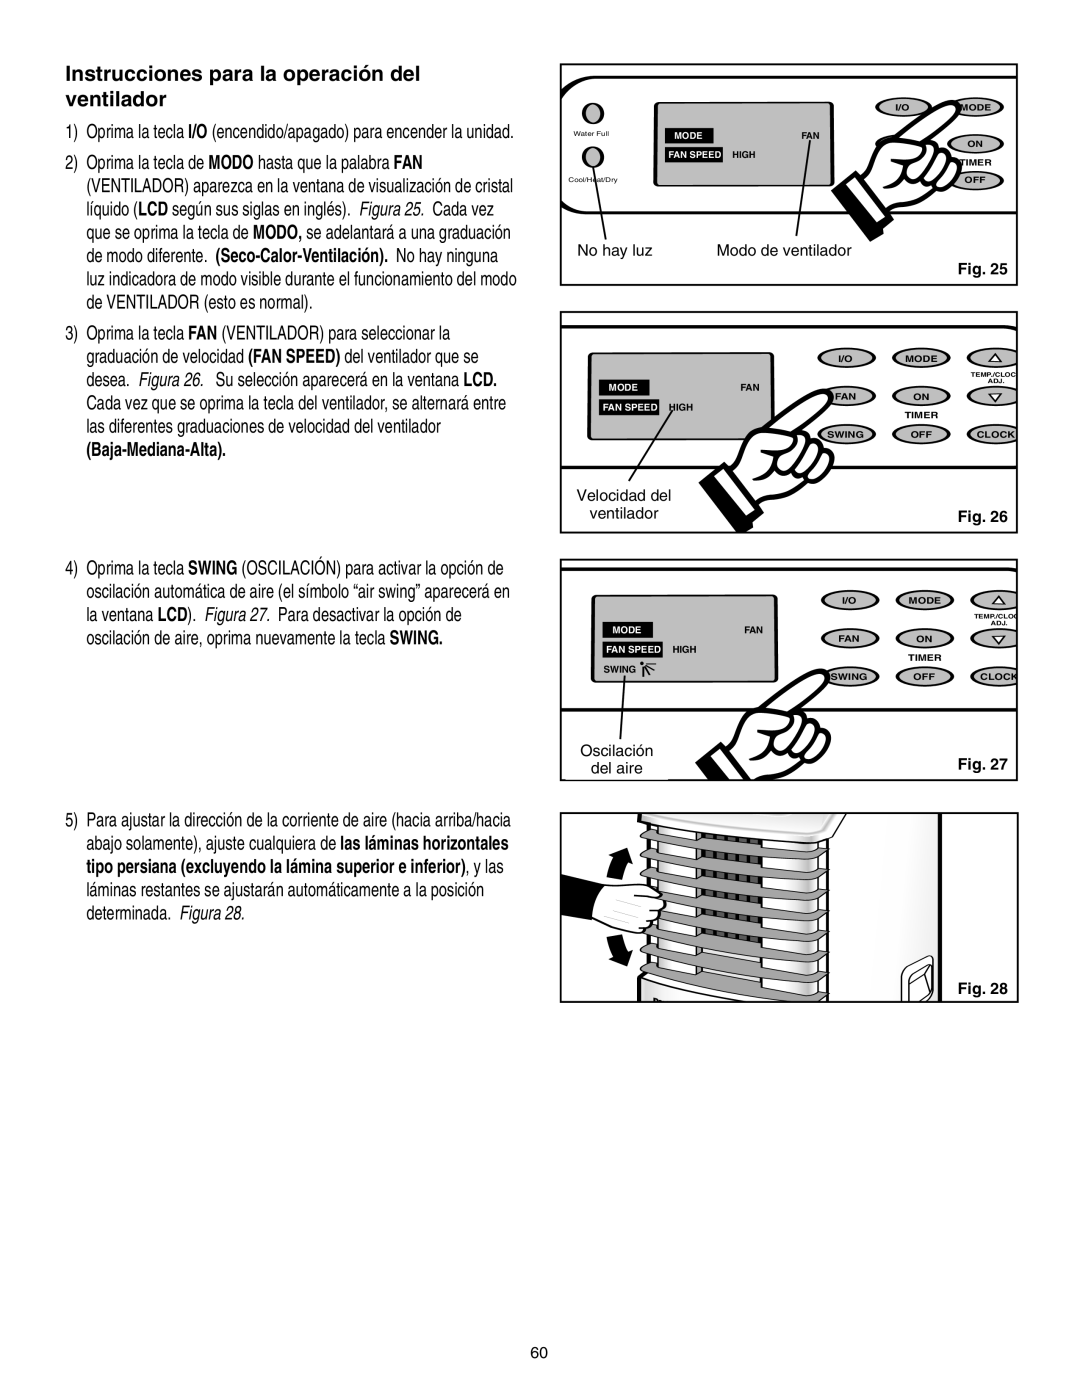 Danby SPAC8499 Instrucciones para la operación del ventilador, Baja-Mediana-Alta, Fig, Velocidad del, Oscilación, del aire 